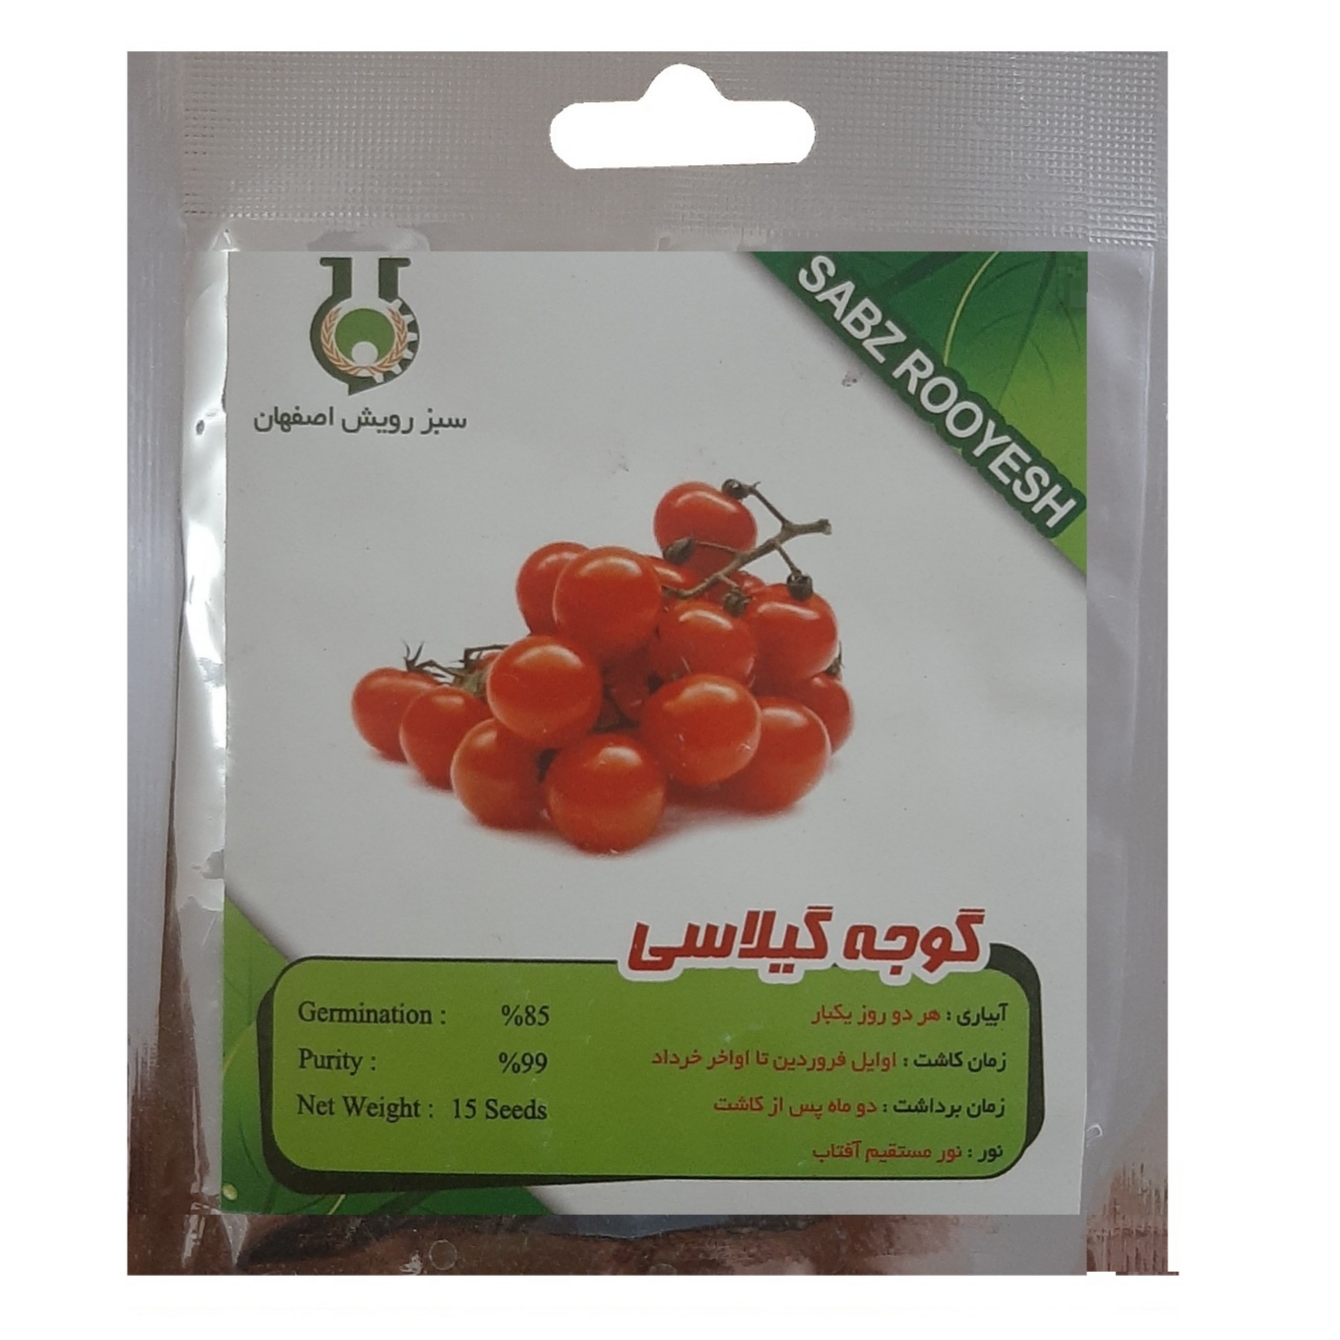 بذر گوجه گیلاسی سبز رویش اصفهان کد S208